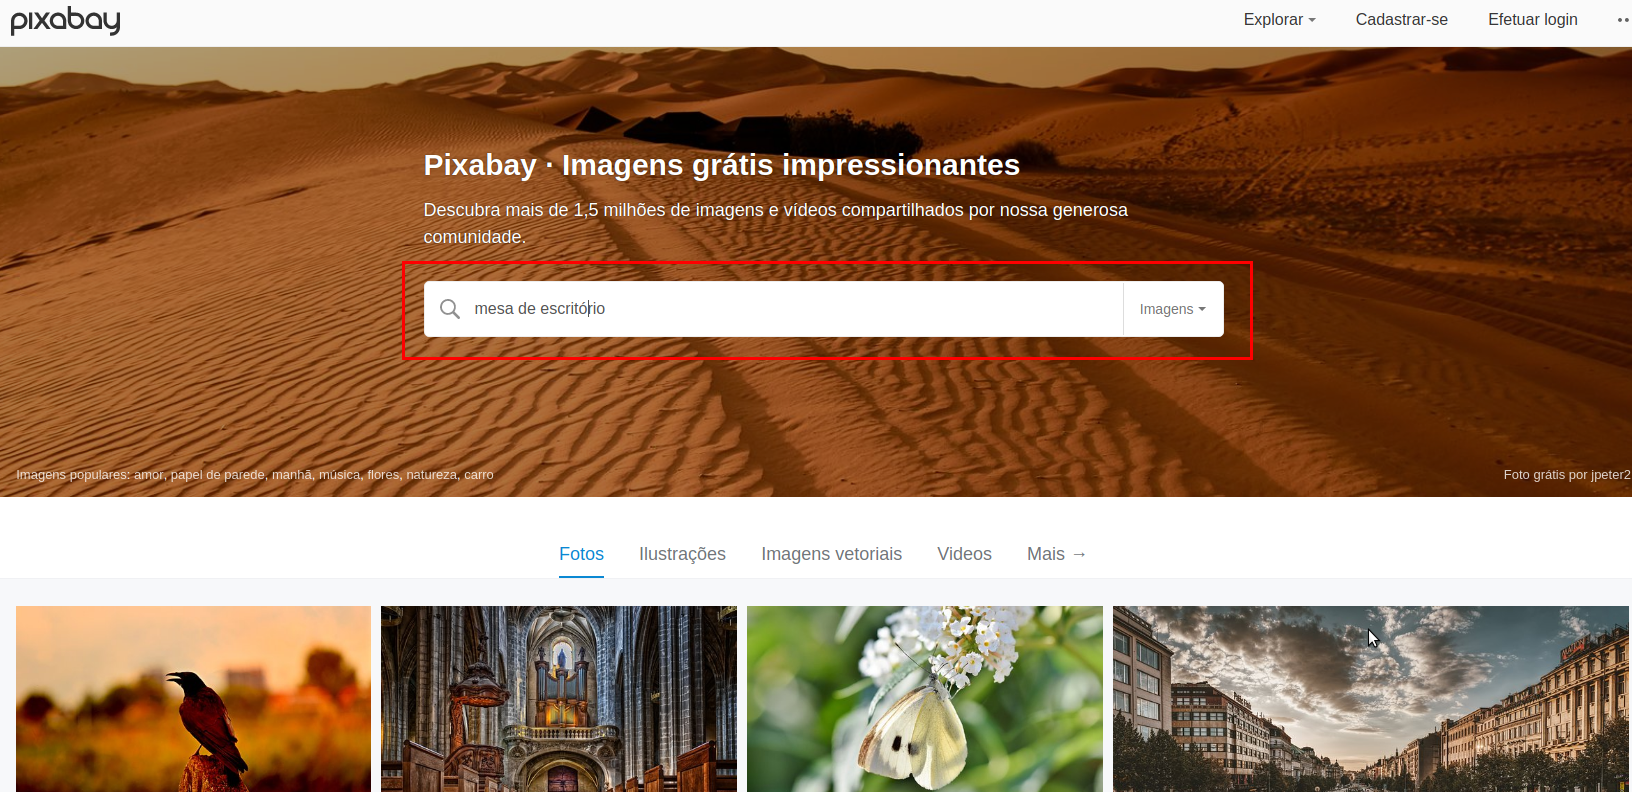 Imagem da página inicial do site Pixabay com a barra de busca em destaque.